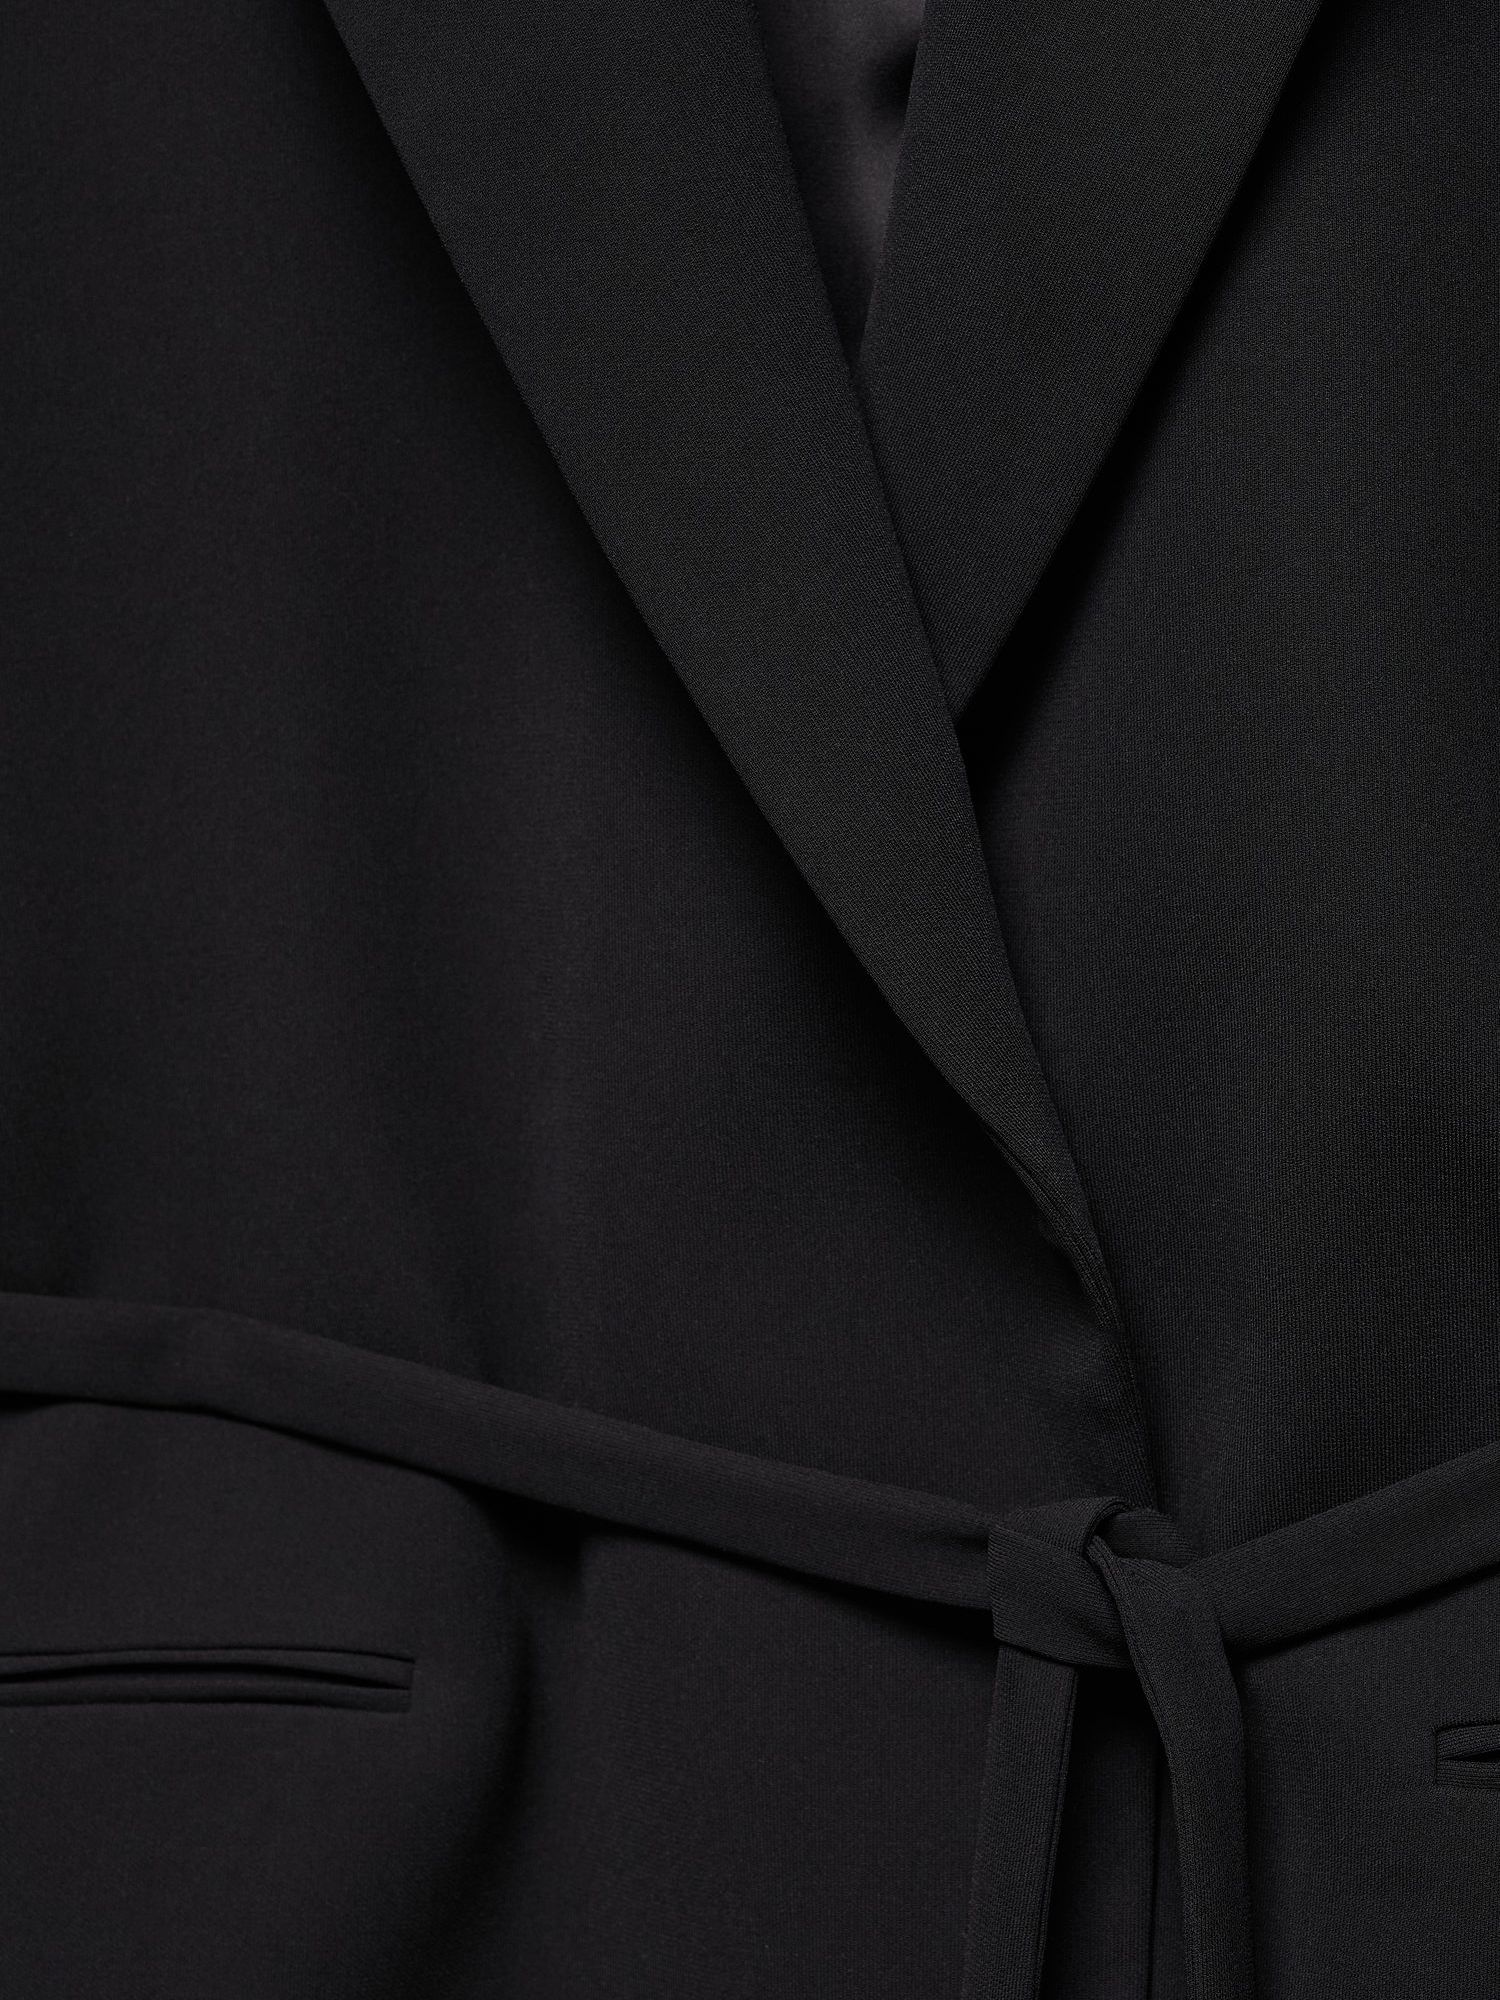 Mango Tortuga Suit Blazer, Black, XXXXXXL